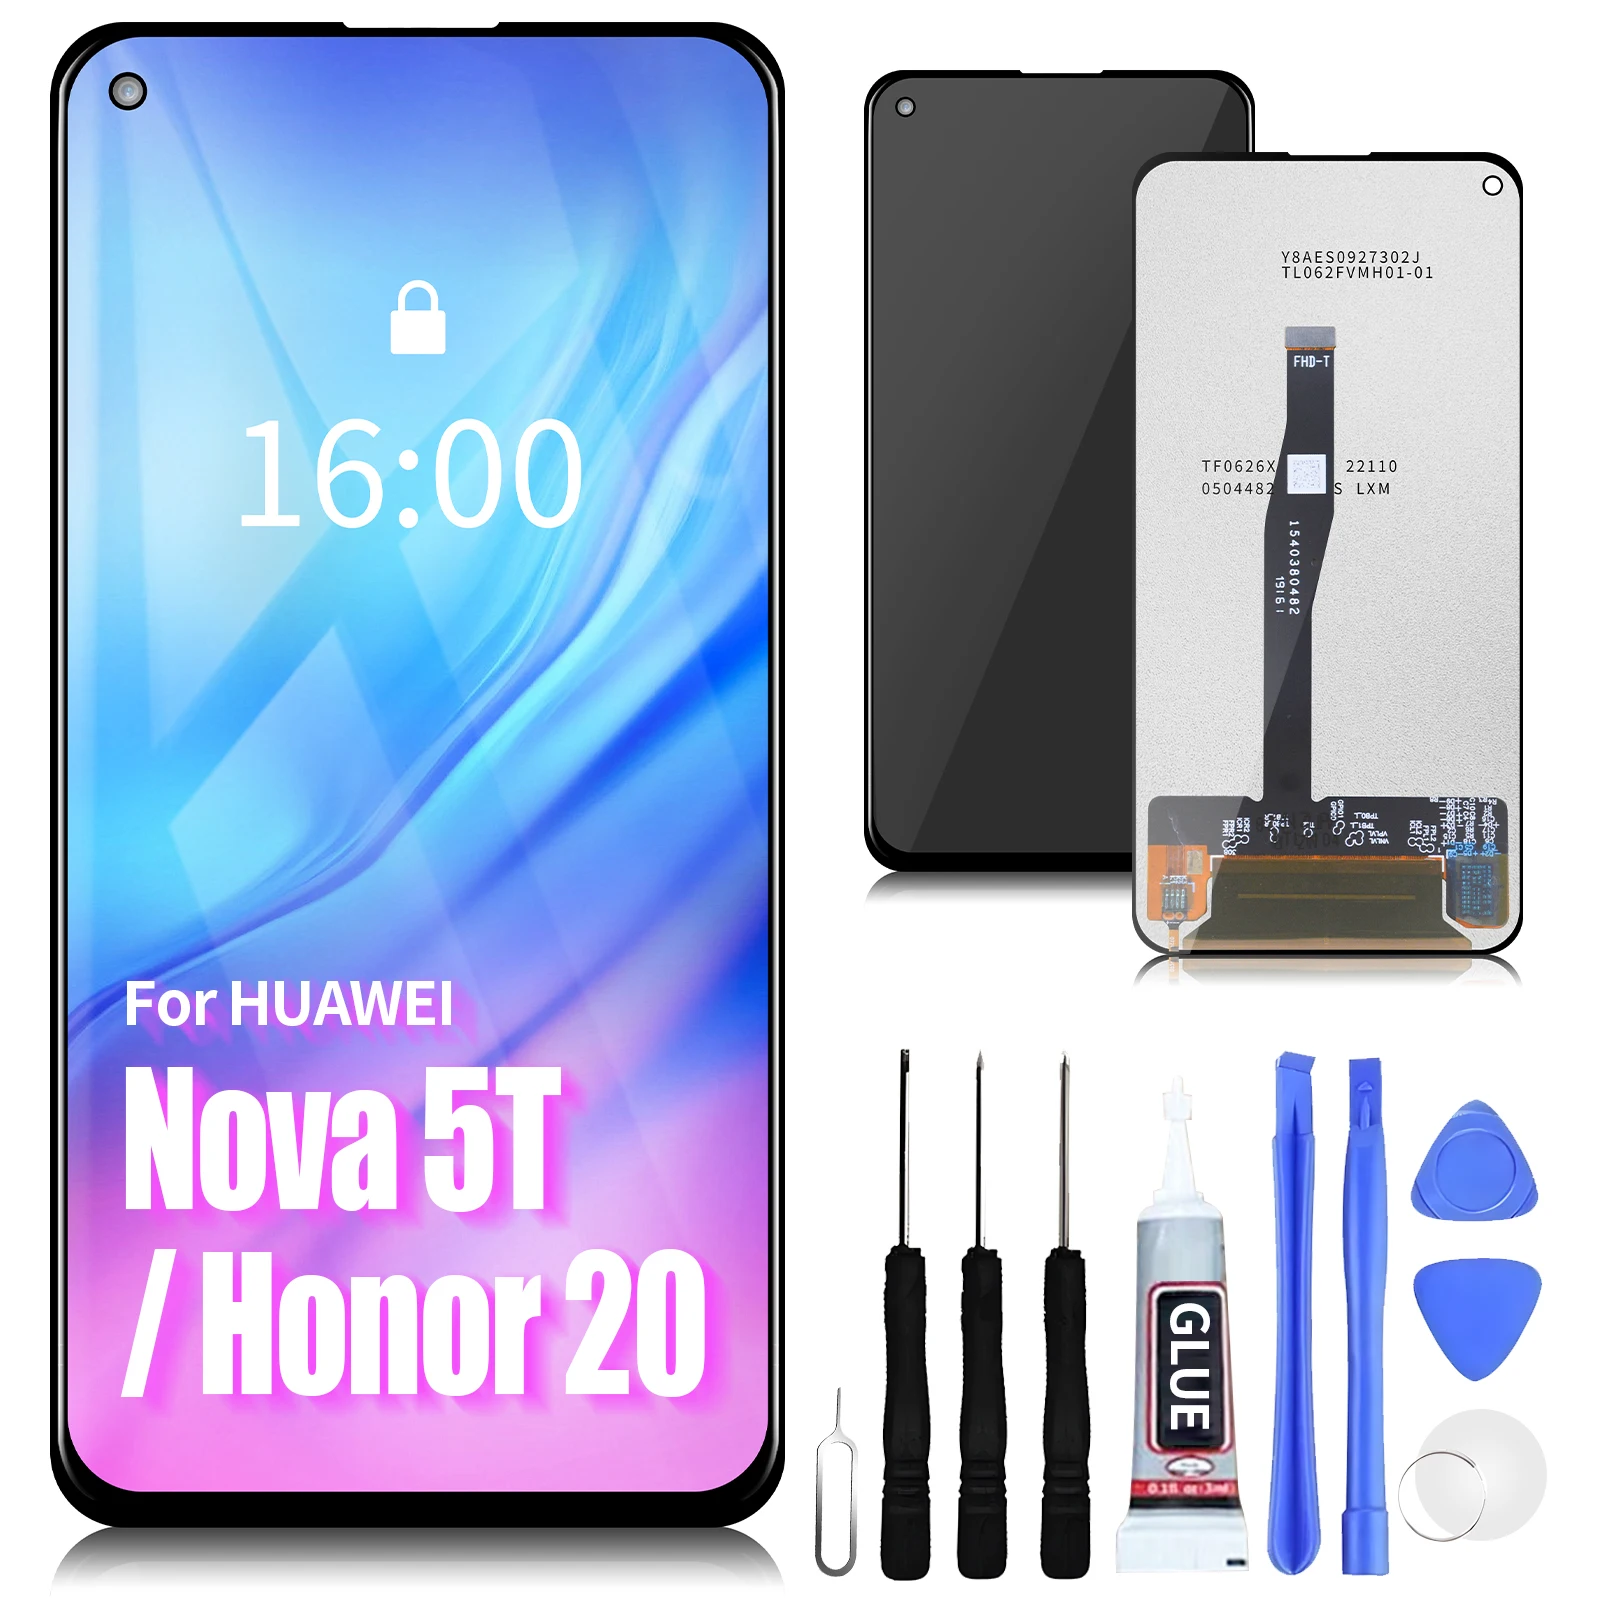 Huawei nova 5T, Honor 20,6.26,l61,l71,l61d用の交換用タッチスクリーン